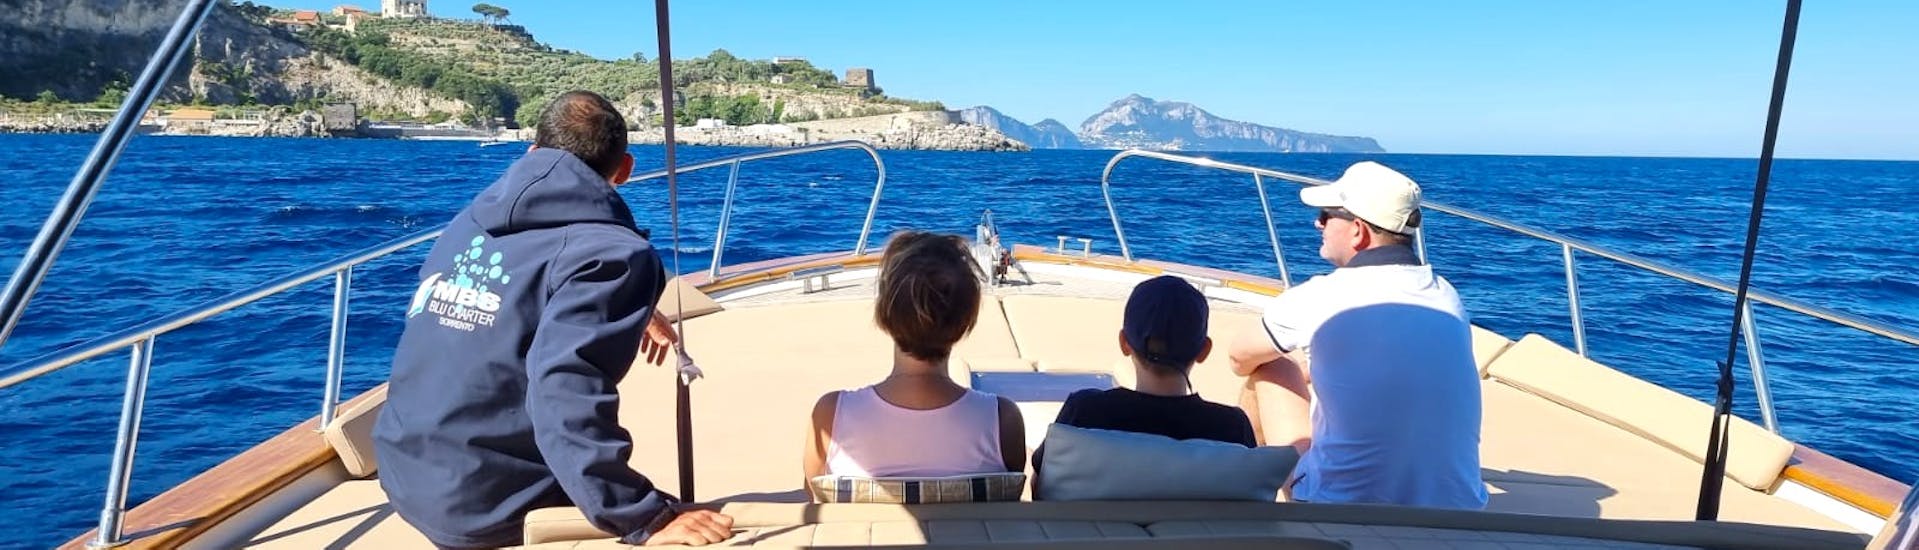 Bild von einigen Teilnehmern auf dem Boot von MBS Blu Charter Sorrento während der privaten Bootsfahrt nach Capri und der Blauen Grotte von Sorrento mit Schnorcheln.